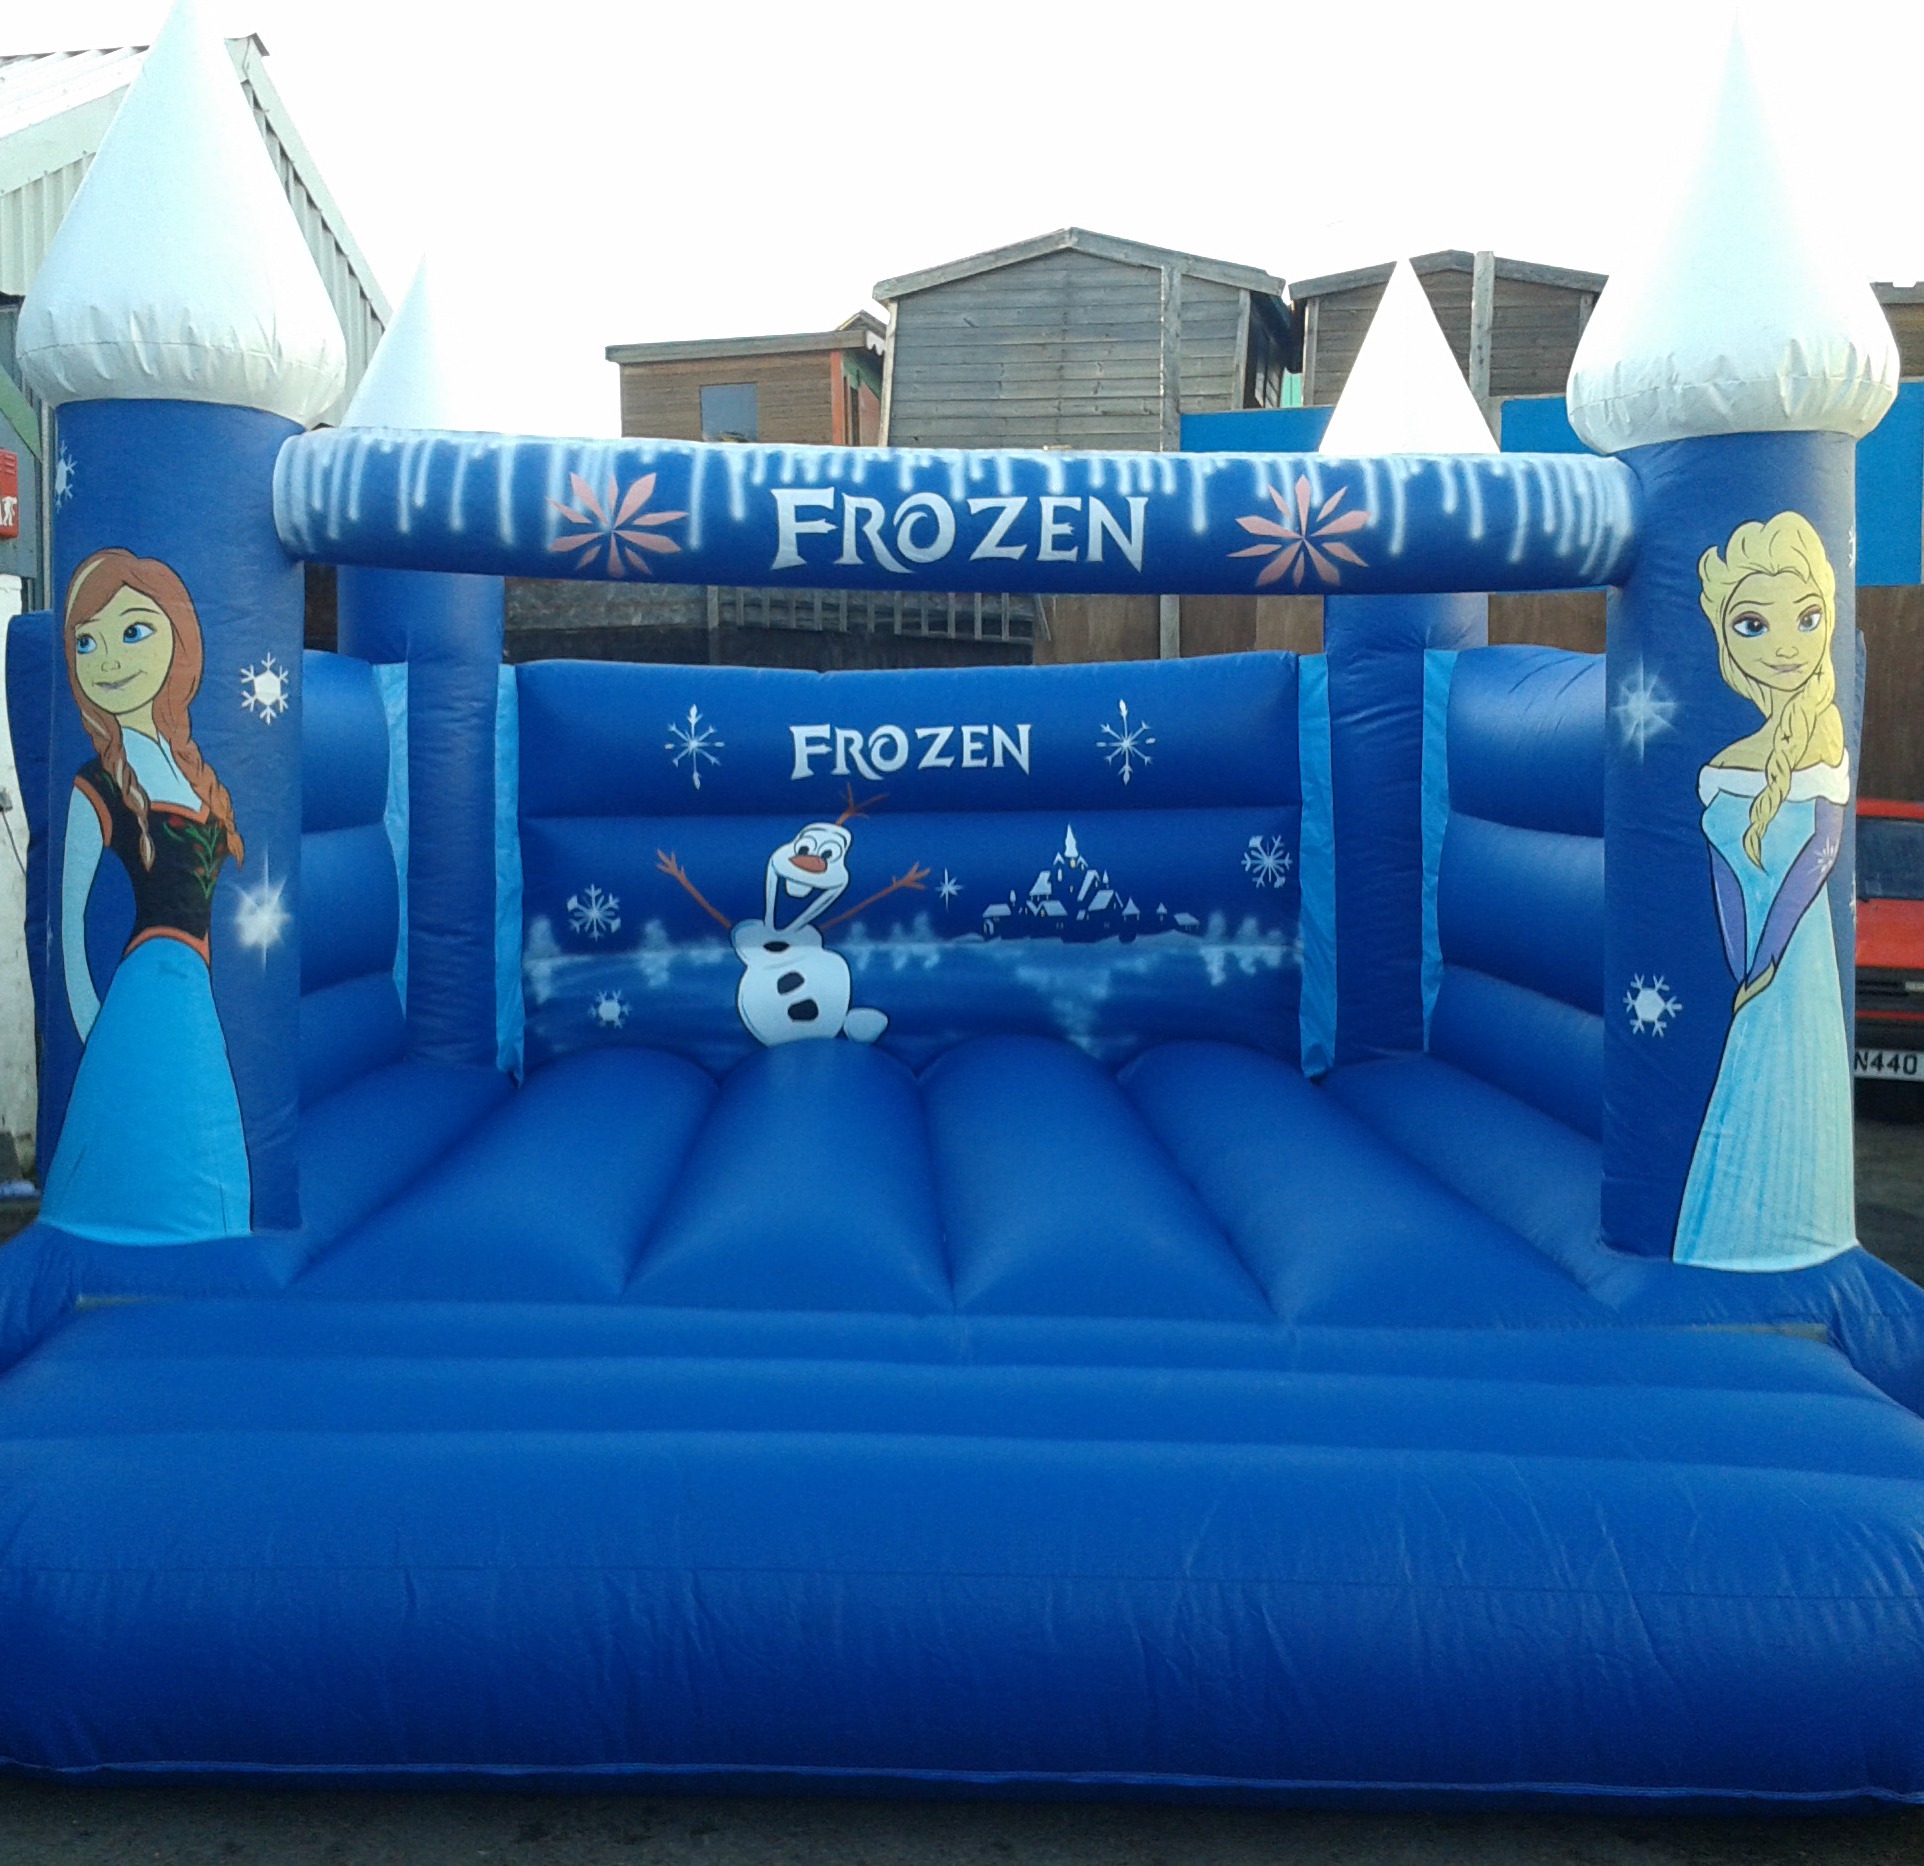 Frozen bouncy castle